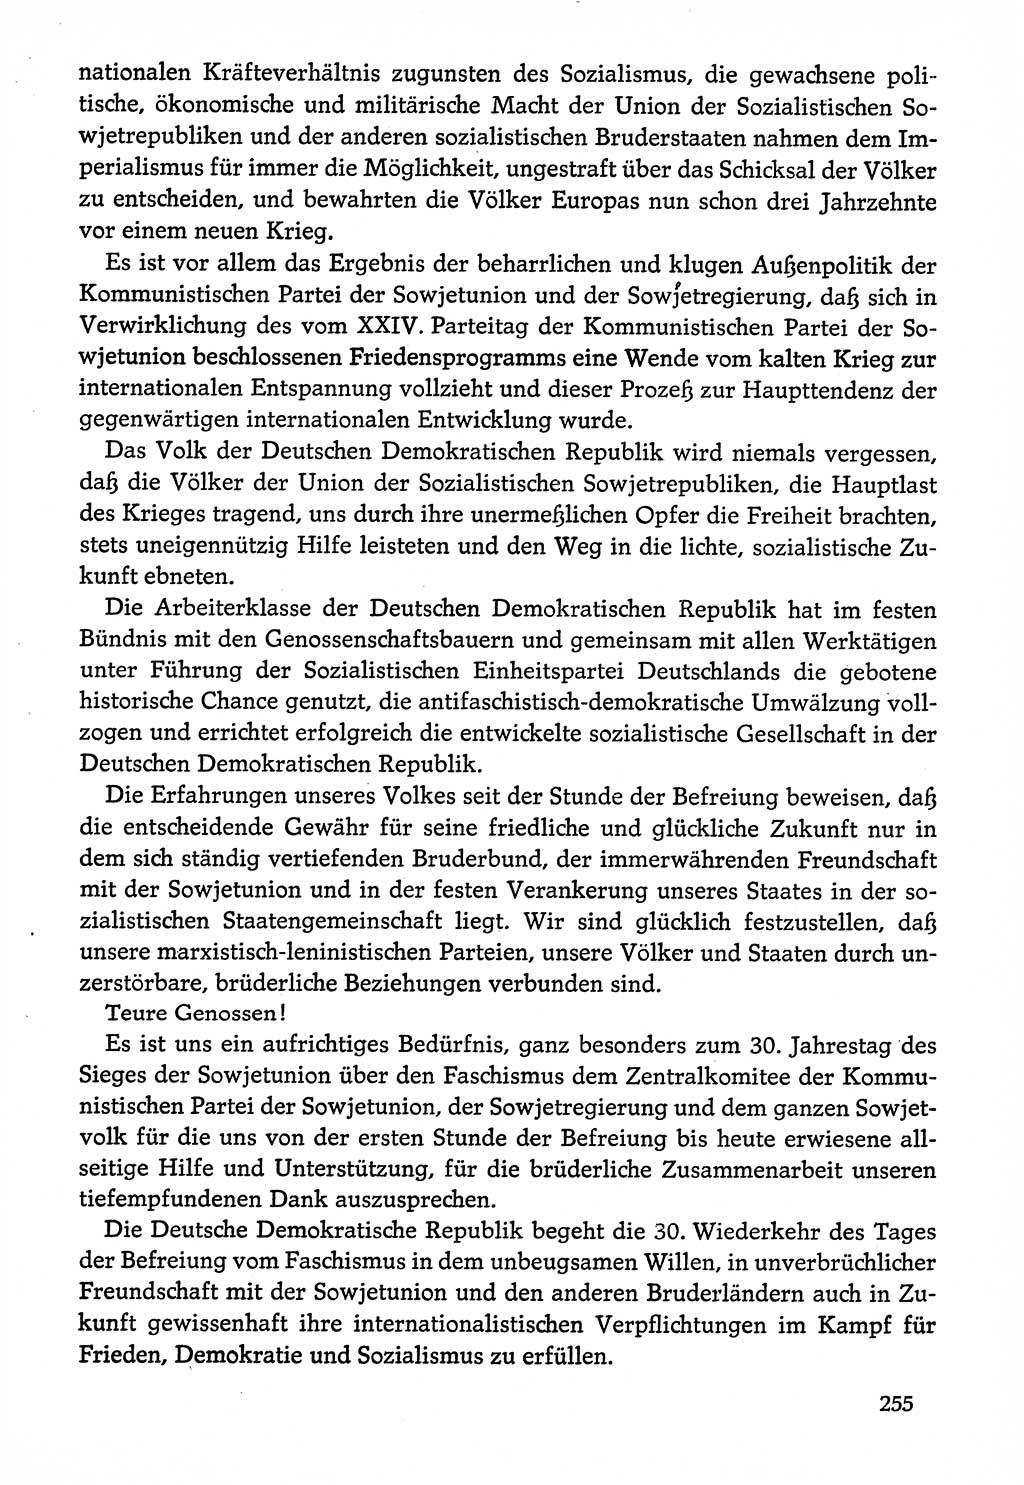 Dokumente der Sozialistischen Einheitspartei Deutschlands (SED) [Deutsche Demokratische Republik (DDR)] 1974-1975, Seite 255 (Dok. SED DDR 1978, Bd. ⅩⅤ, S. 255)